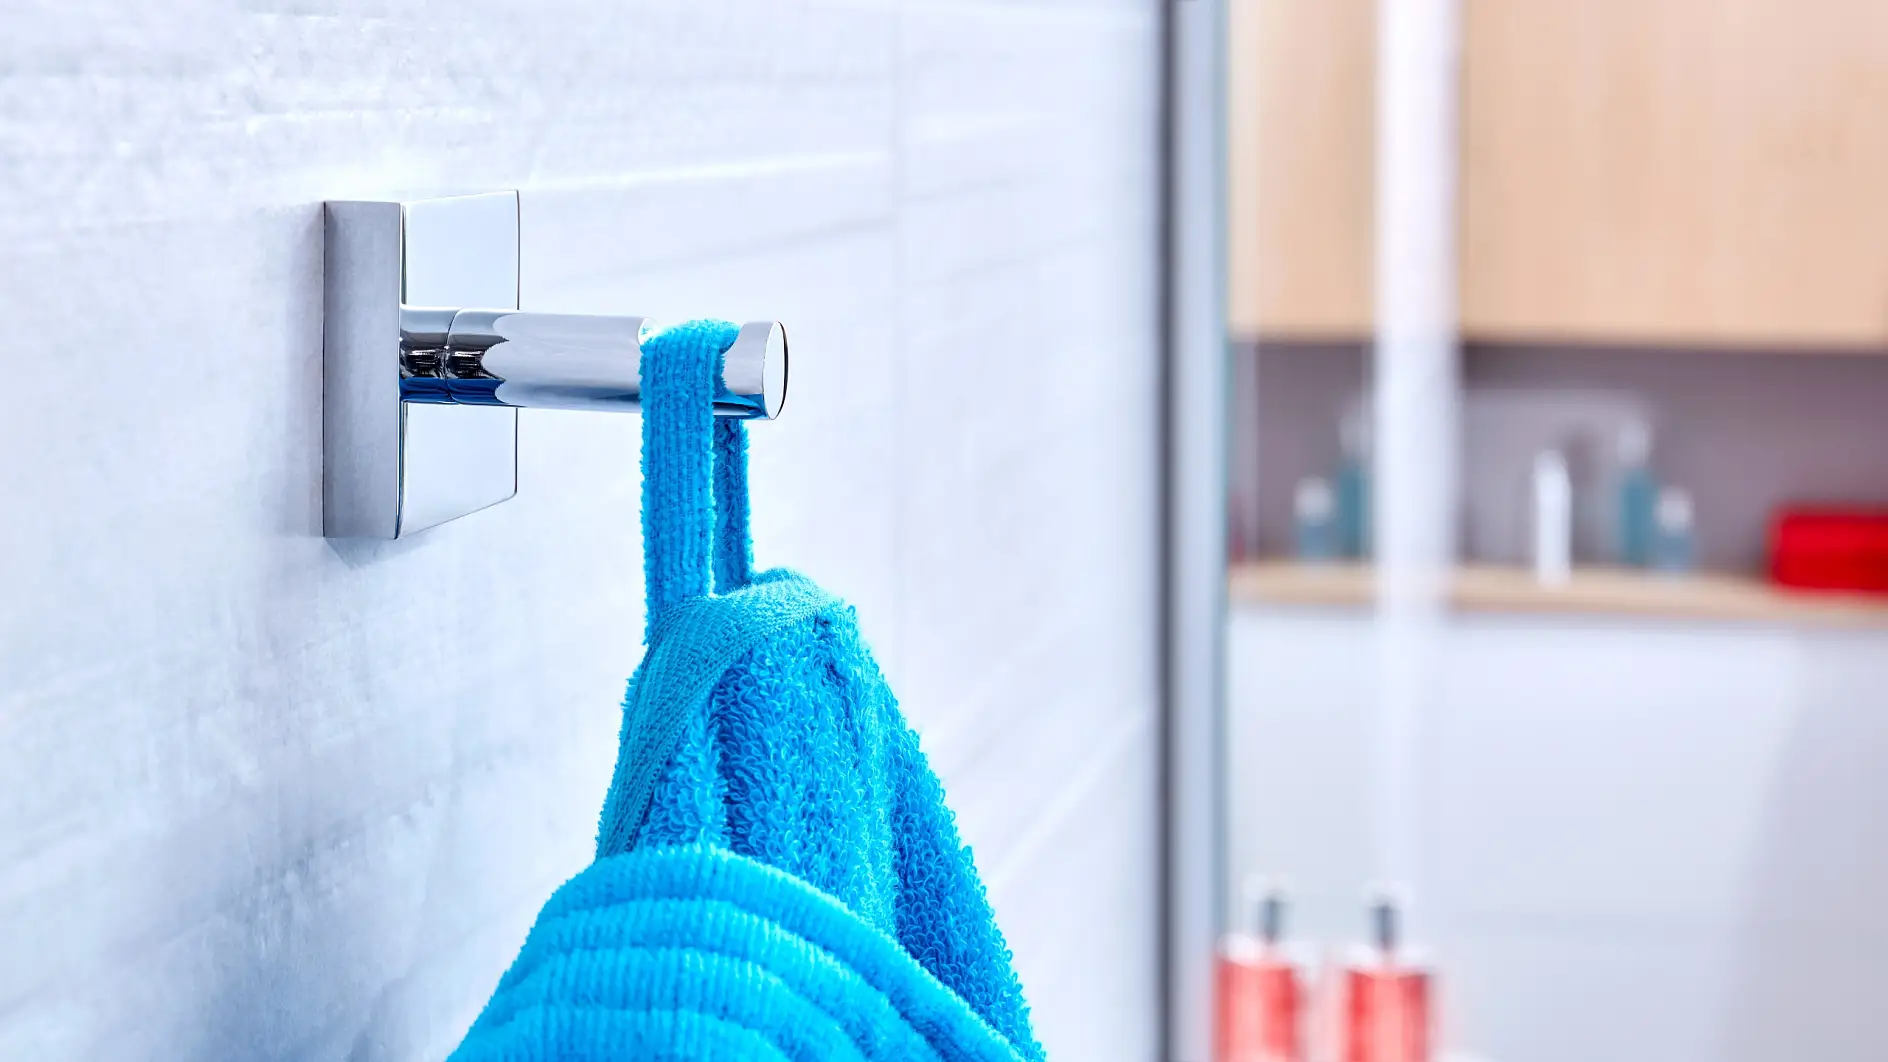 Fordi dine håndklæder og badekåber har brug for et sted at hænge og holde sig tørre før brug.